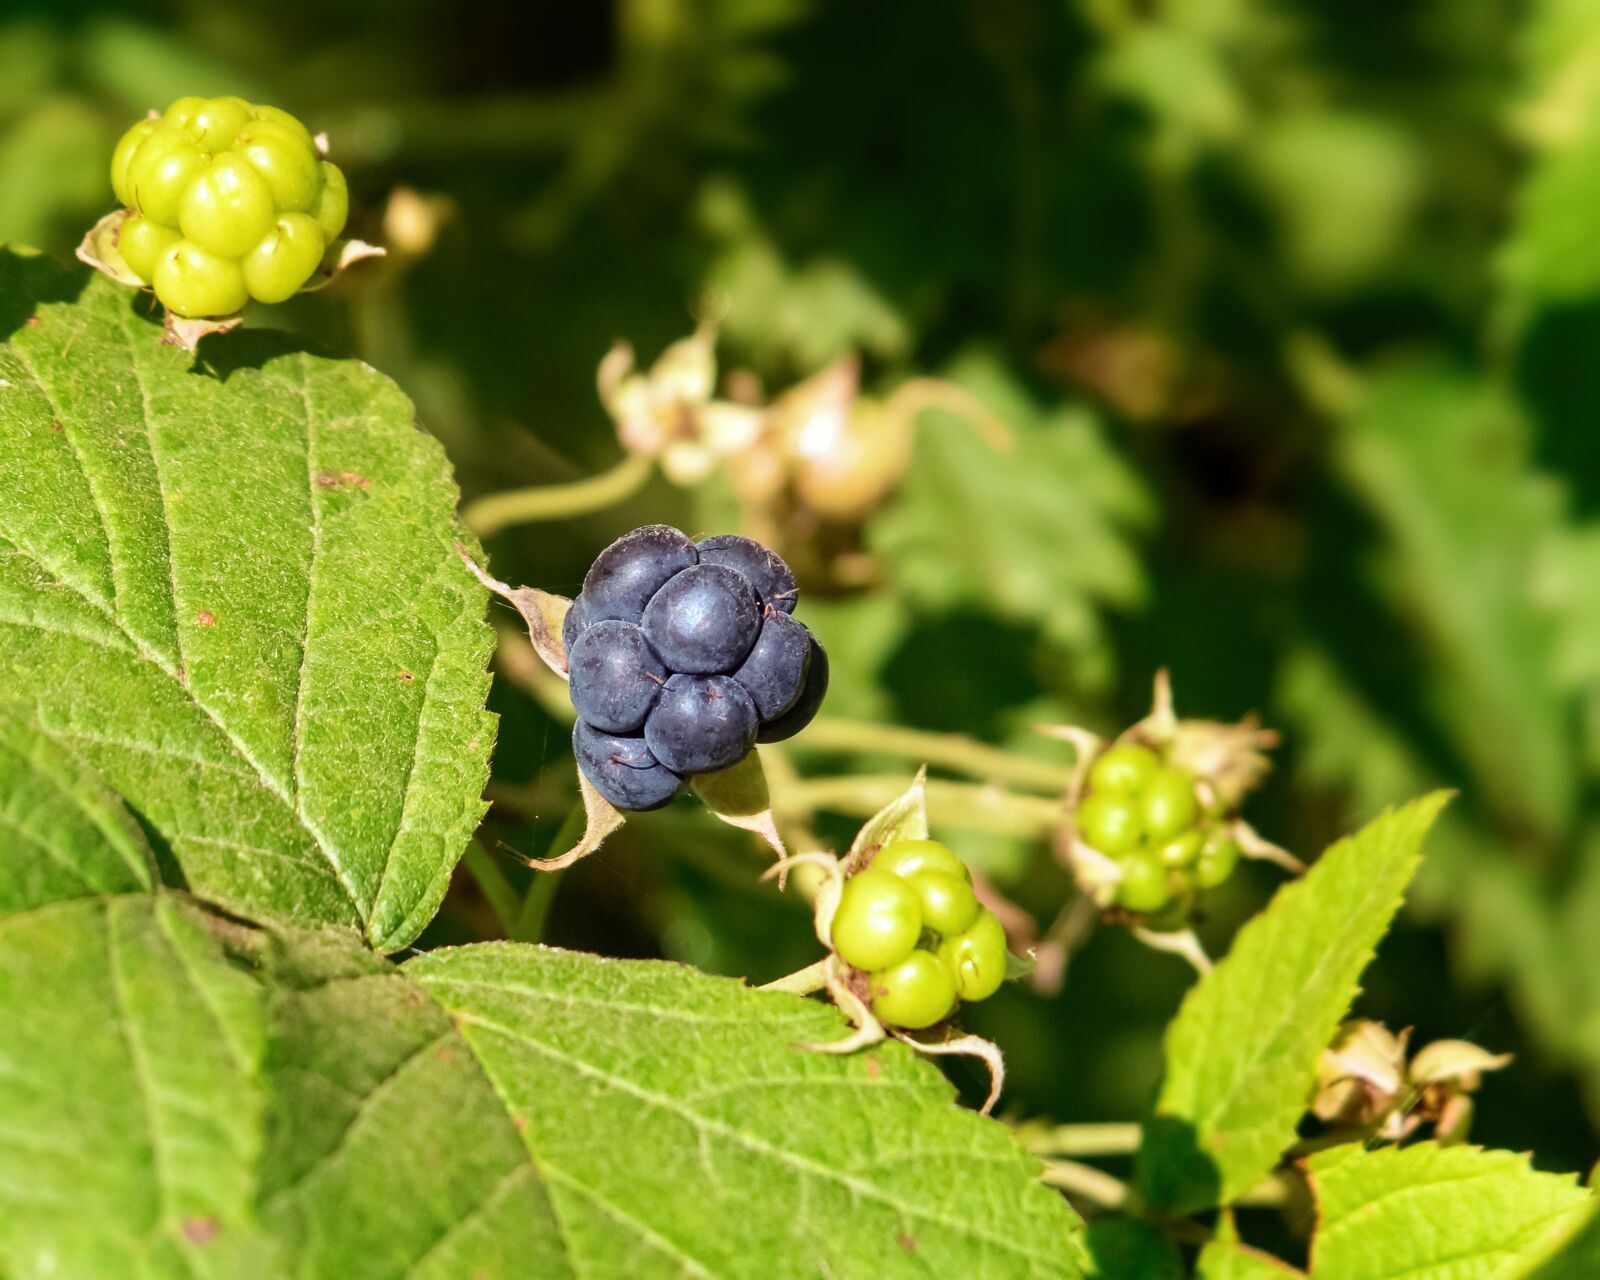 Canon PowerShot G3 X sample photo. Blackberries, bramble, berries photography